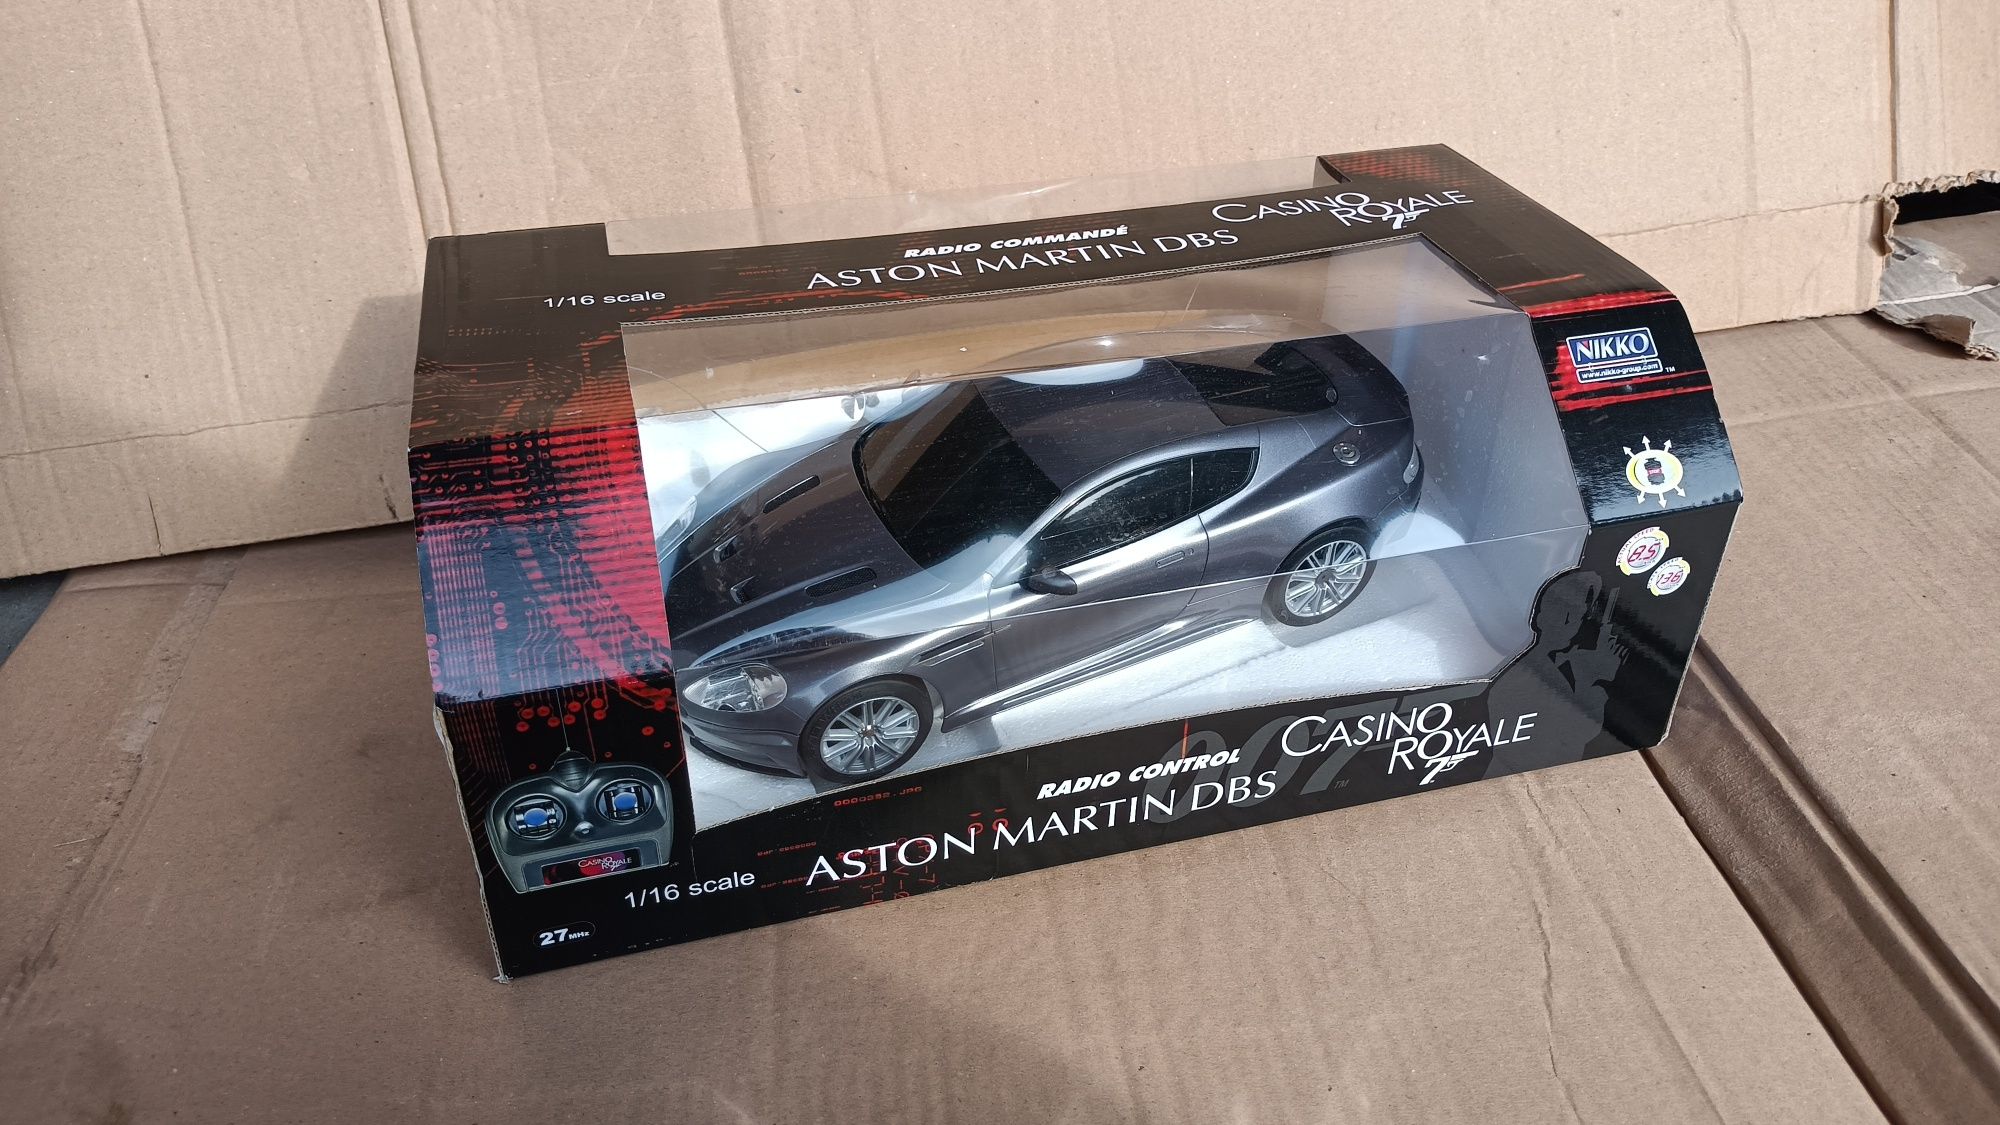 Nikko 1:16 RC Aston Martin DBS Casino Royale zdalnie sterowane autko